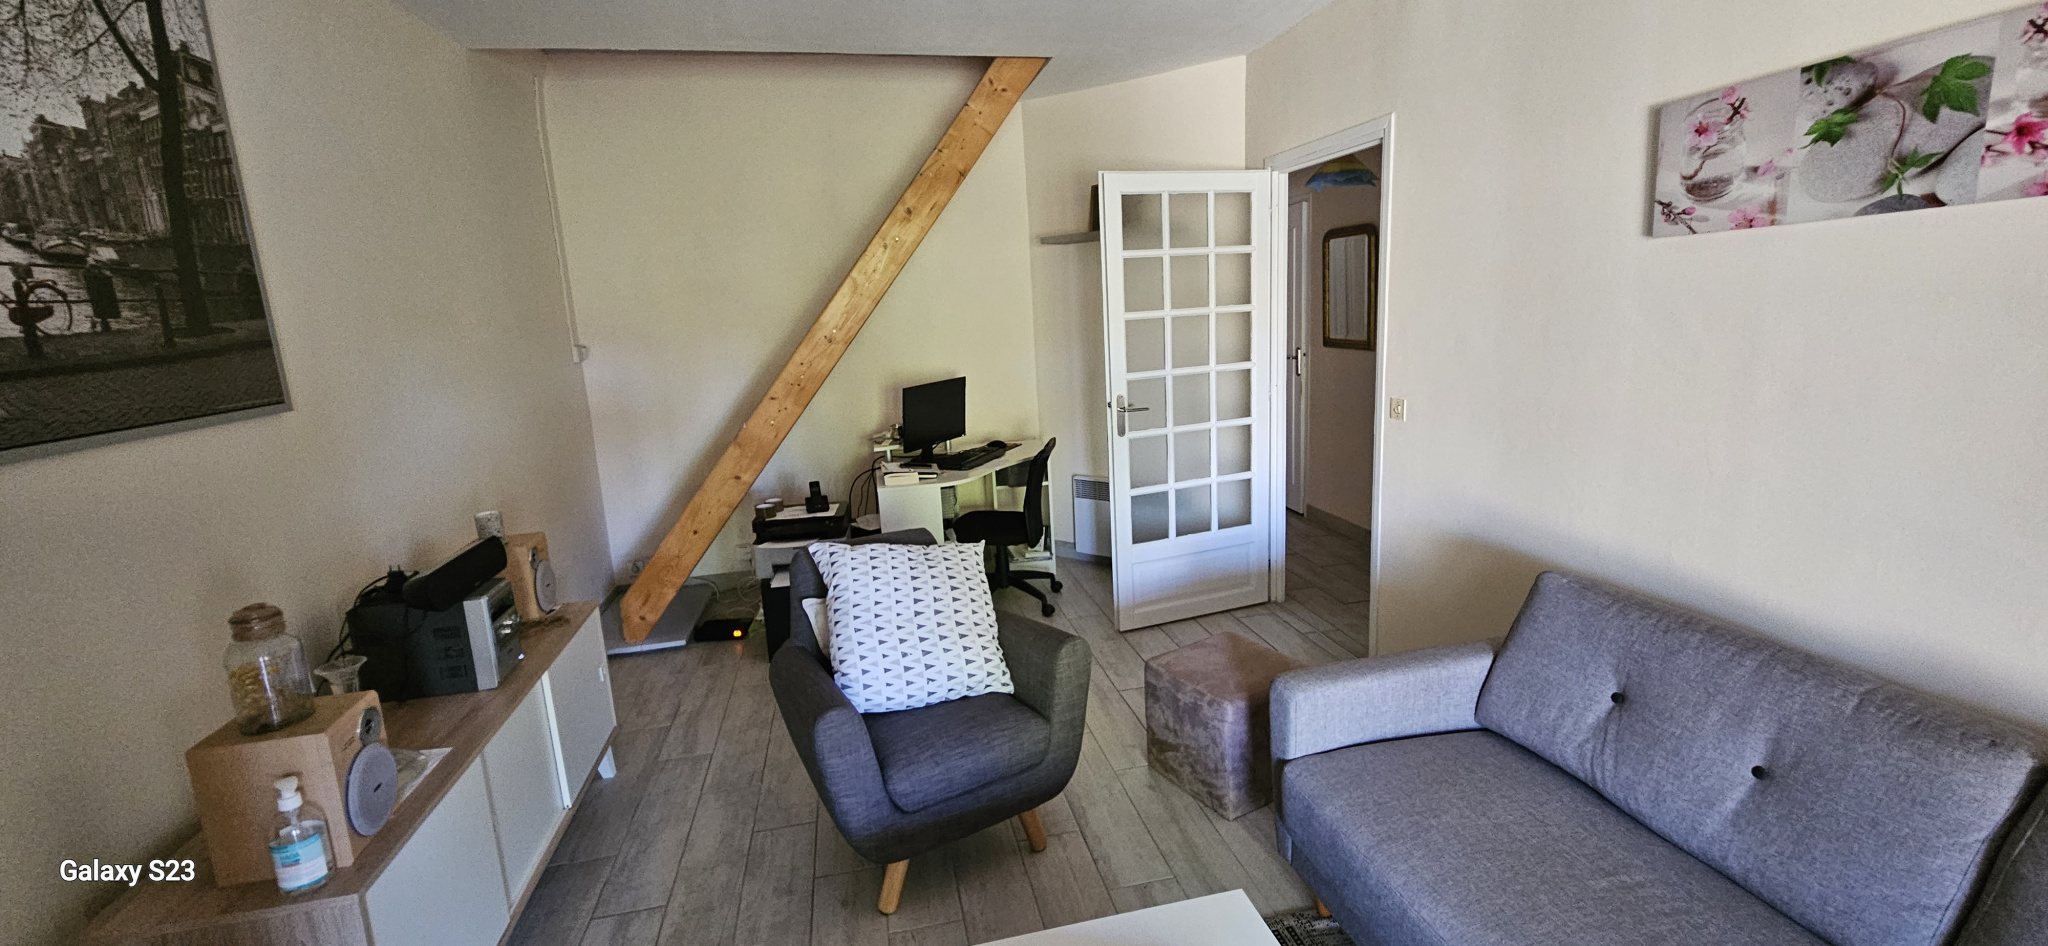 Maison Lézignan-Corbières 104000€ Grimois Immobilier